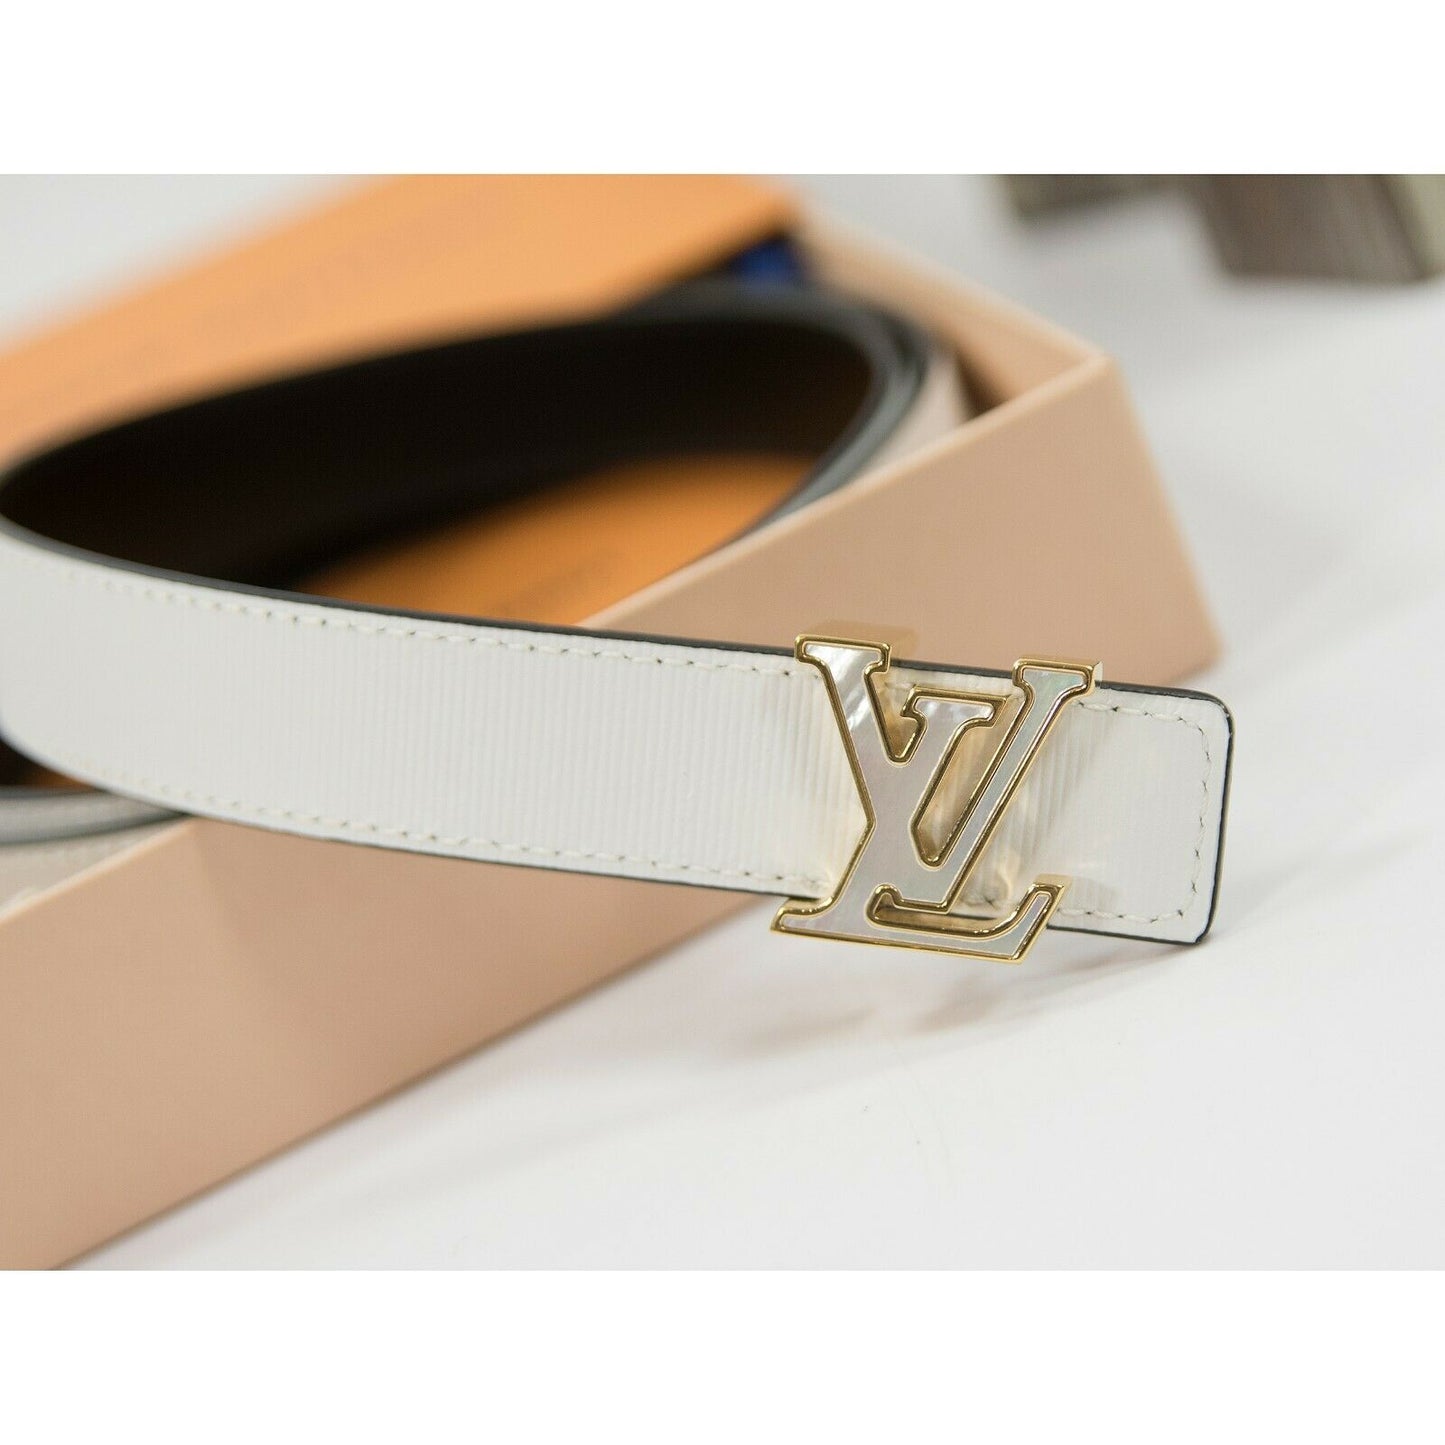 Louis Vuitton Monogram Canvas Initiales Belt 85 CM Louis Vuitton